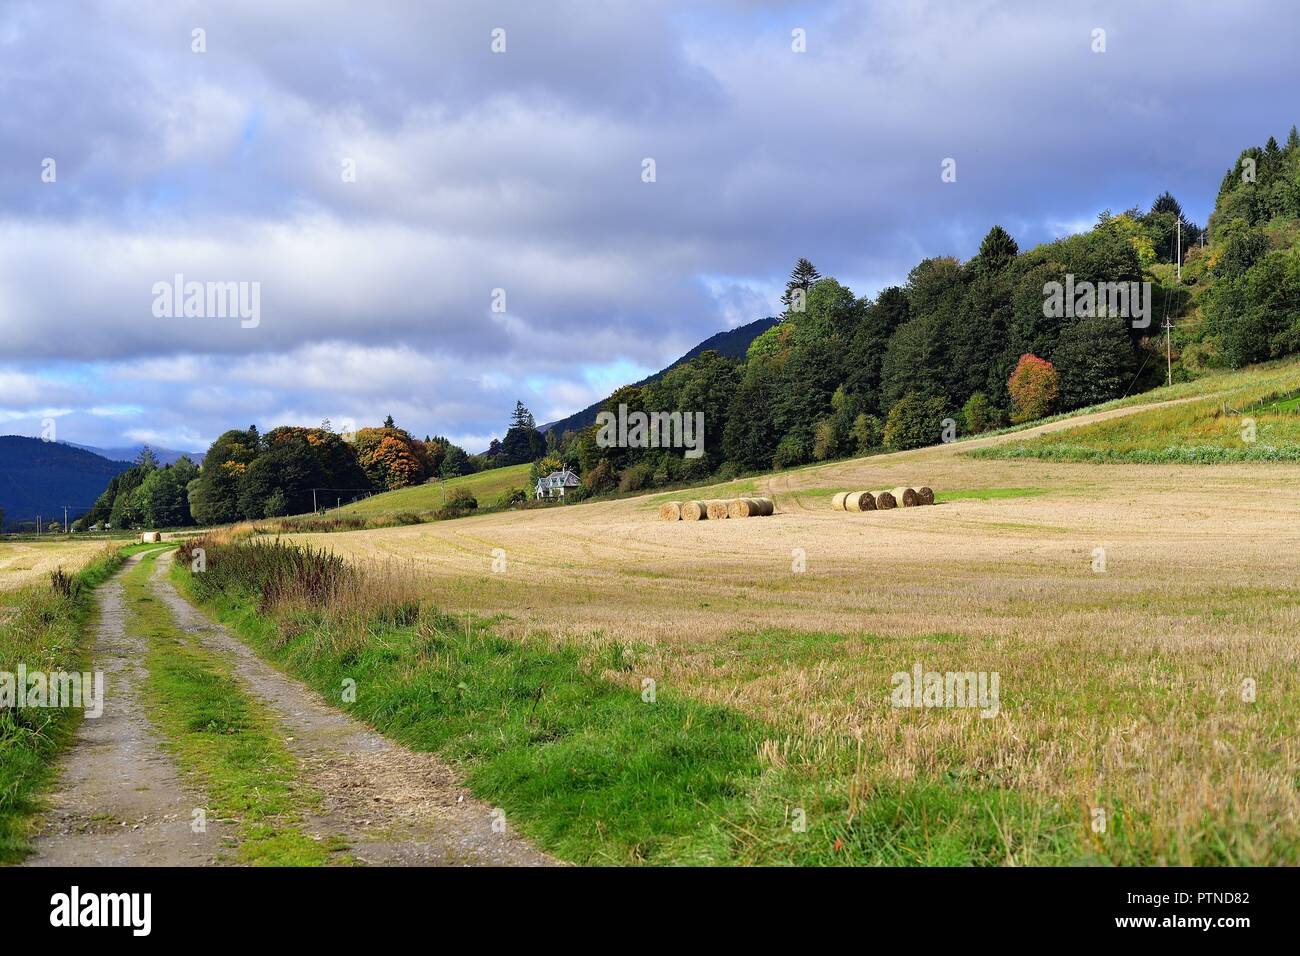 Weem, Schottland, Vereinigtes Königreich. Ballen Heu ruht in einem Bereich, in dem Land in der Nähe von Weem, nördlich von Edinburgh in Pershshire. Stockfoto